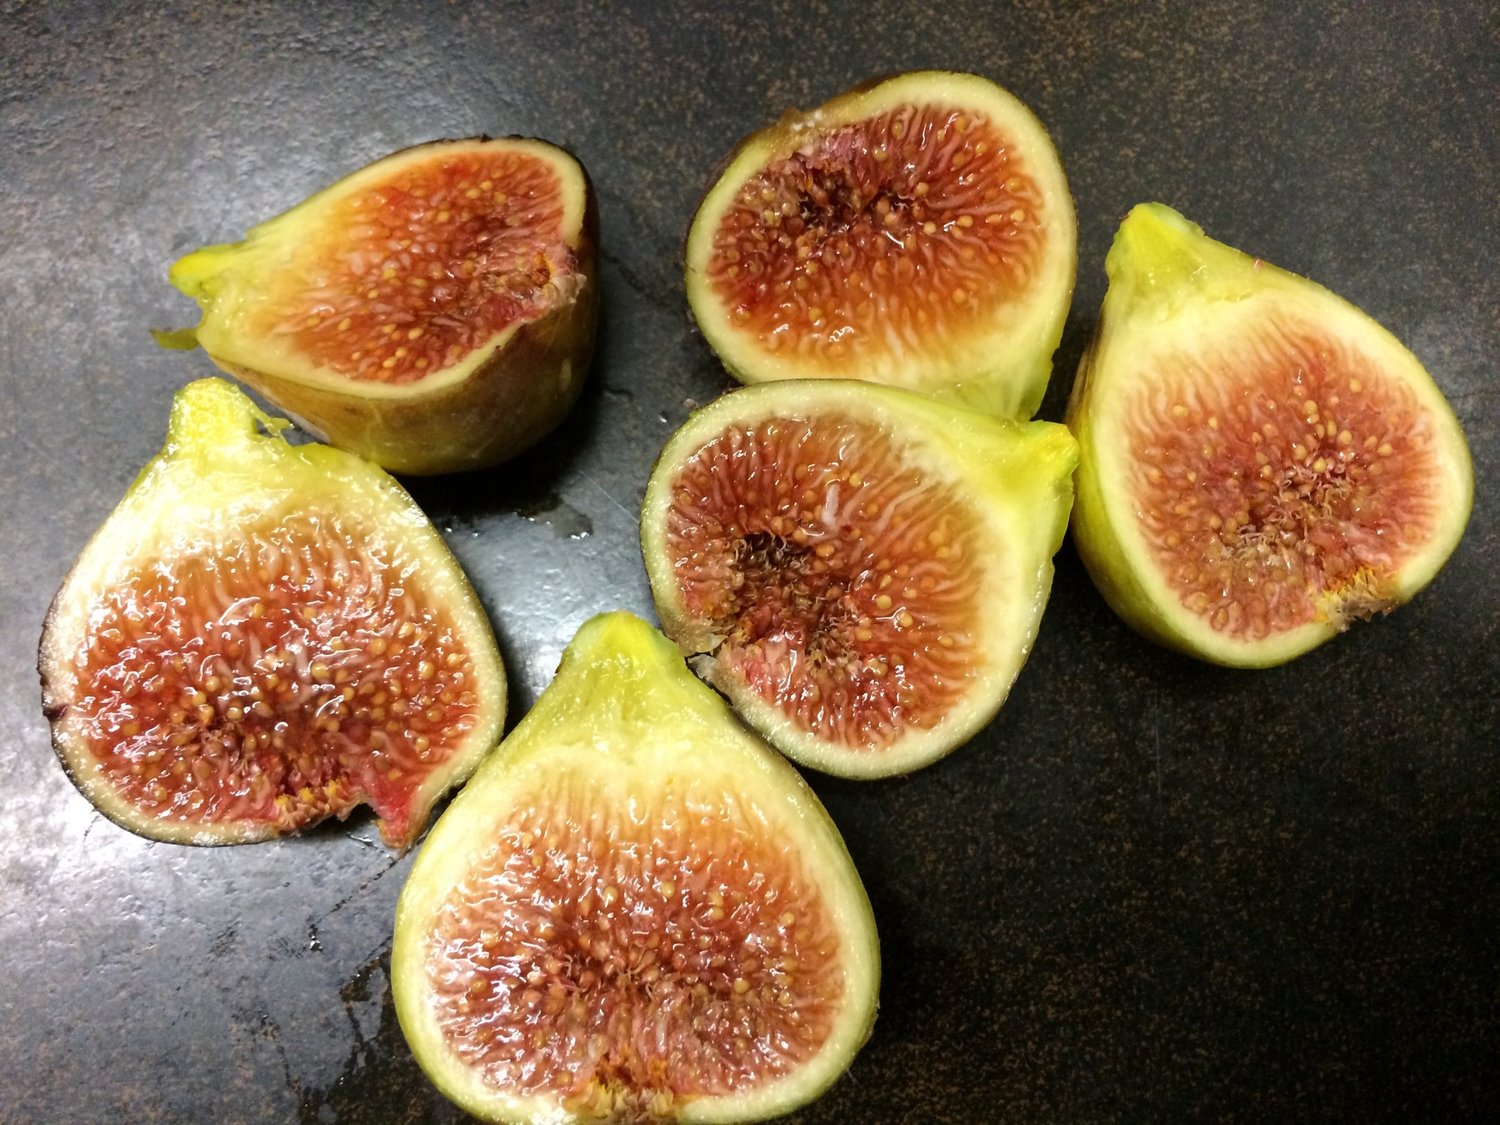 Coll de Dama Blanca-Negra — french fig farm